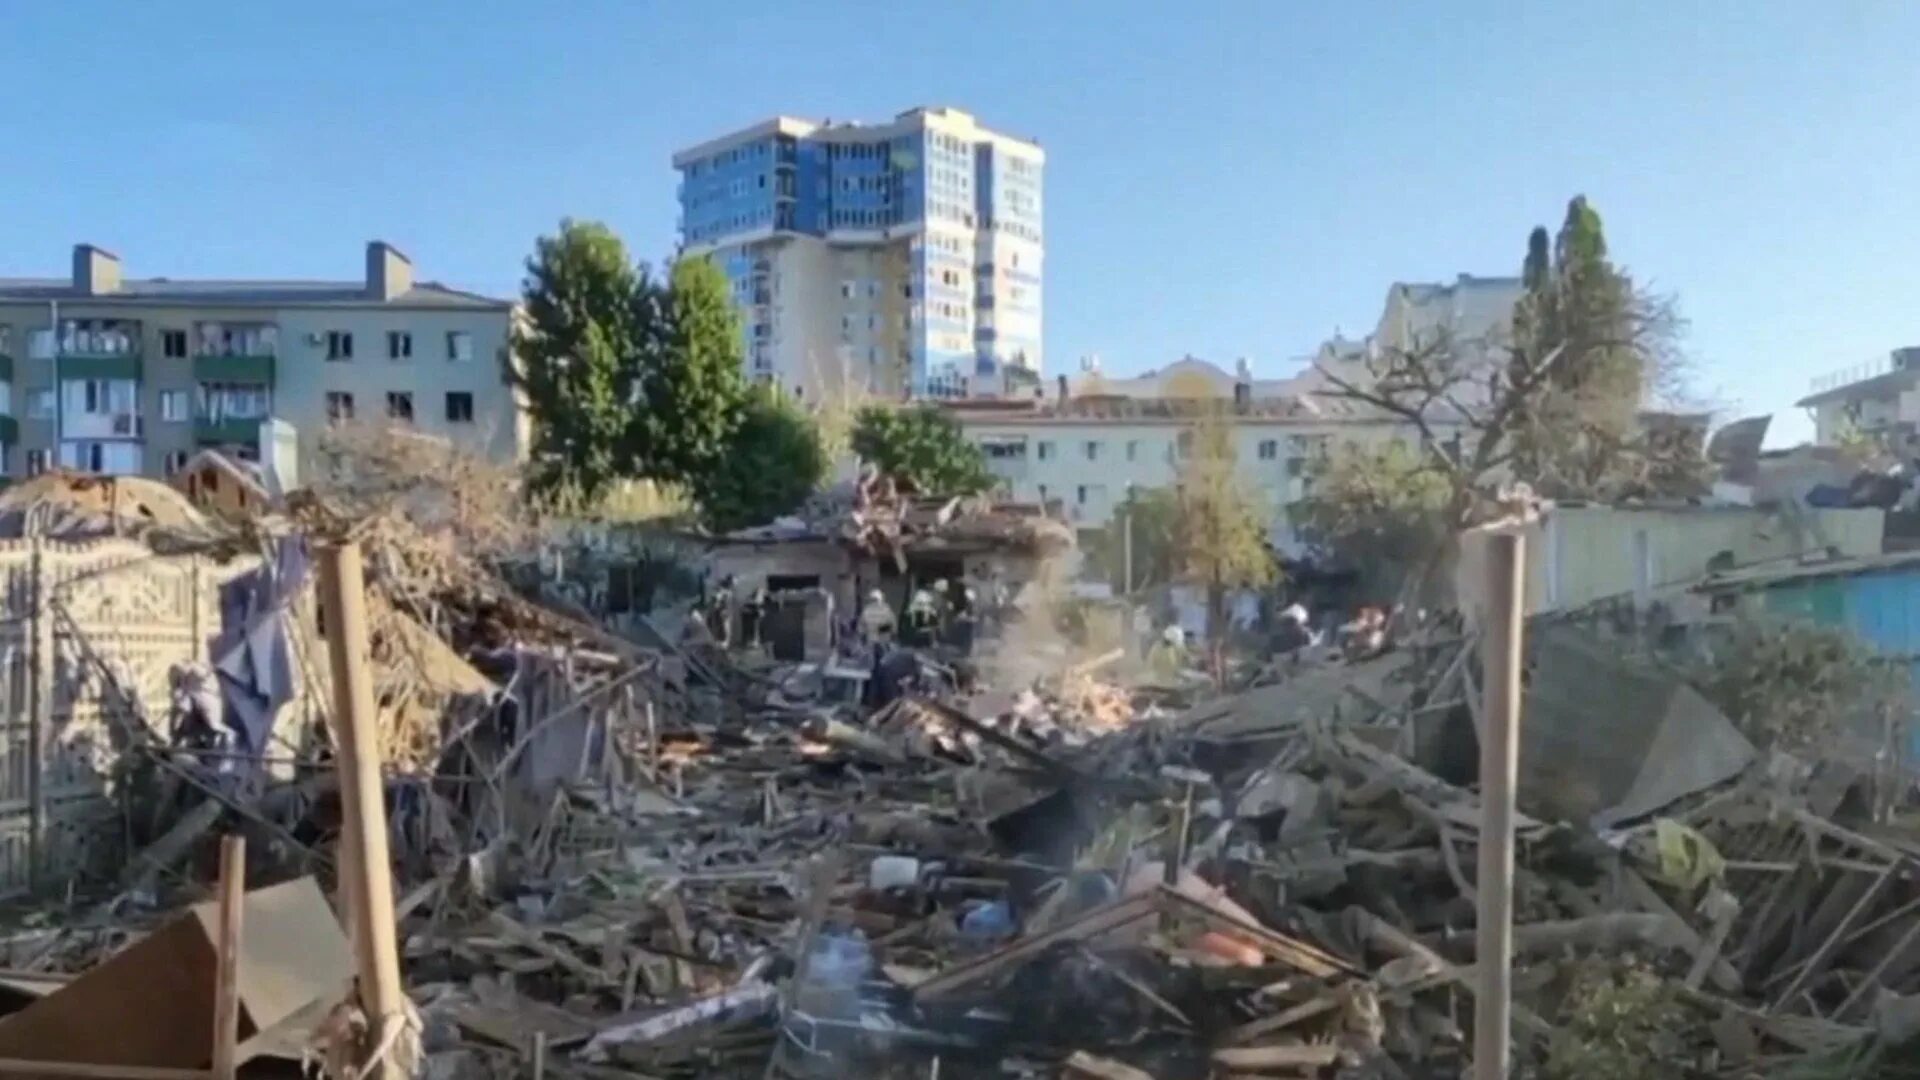 Последние новости 1 03. Взрыв ы вбелгорожде сейчас. Разрушения в Белгороде 03.07. Взрывы в Белгородской. Разрушенный современный город.